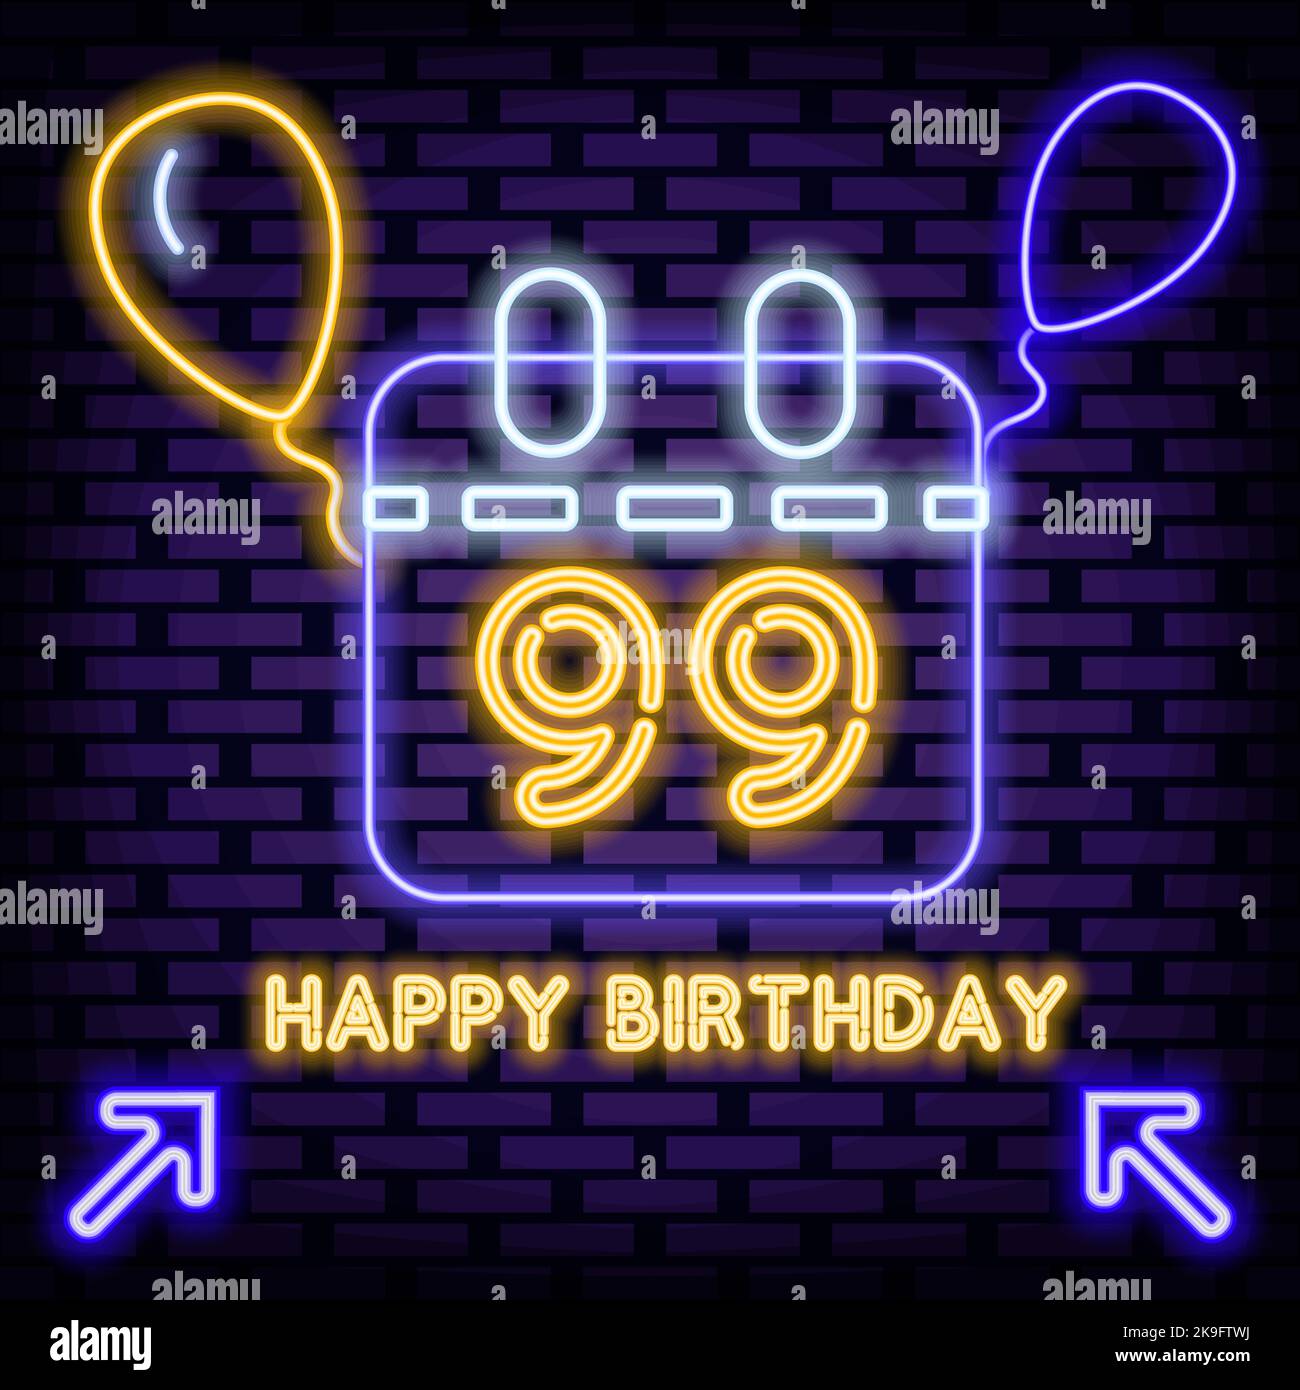 99. Happy Birthday 99 Jahre altes Abzeichen im Neon-Stil. Leuchtet mit buntem Neonlicht. Leuchtreklame. Stock Vektor